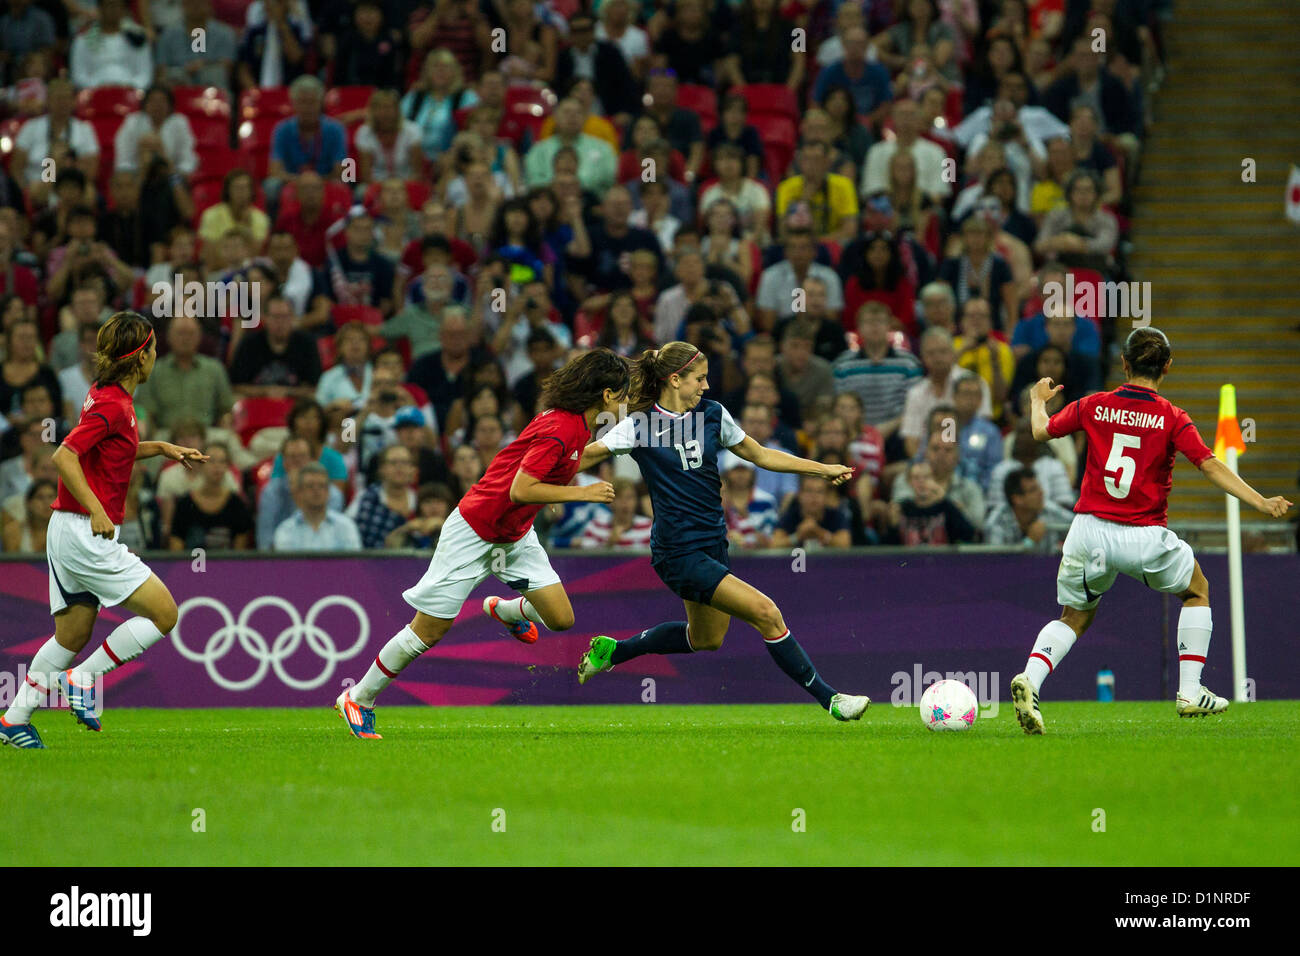 Alex Morgan (USA)-13-USA remporte l'or sur le Japon en femmes Football (soccer) aux Jeux Olympiques d'été, Londres 2012 Banque D'Images